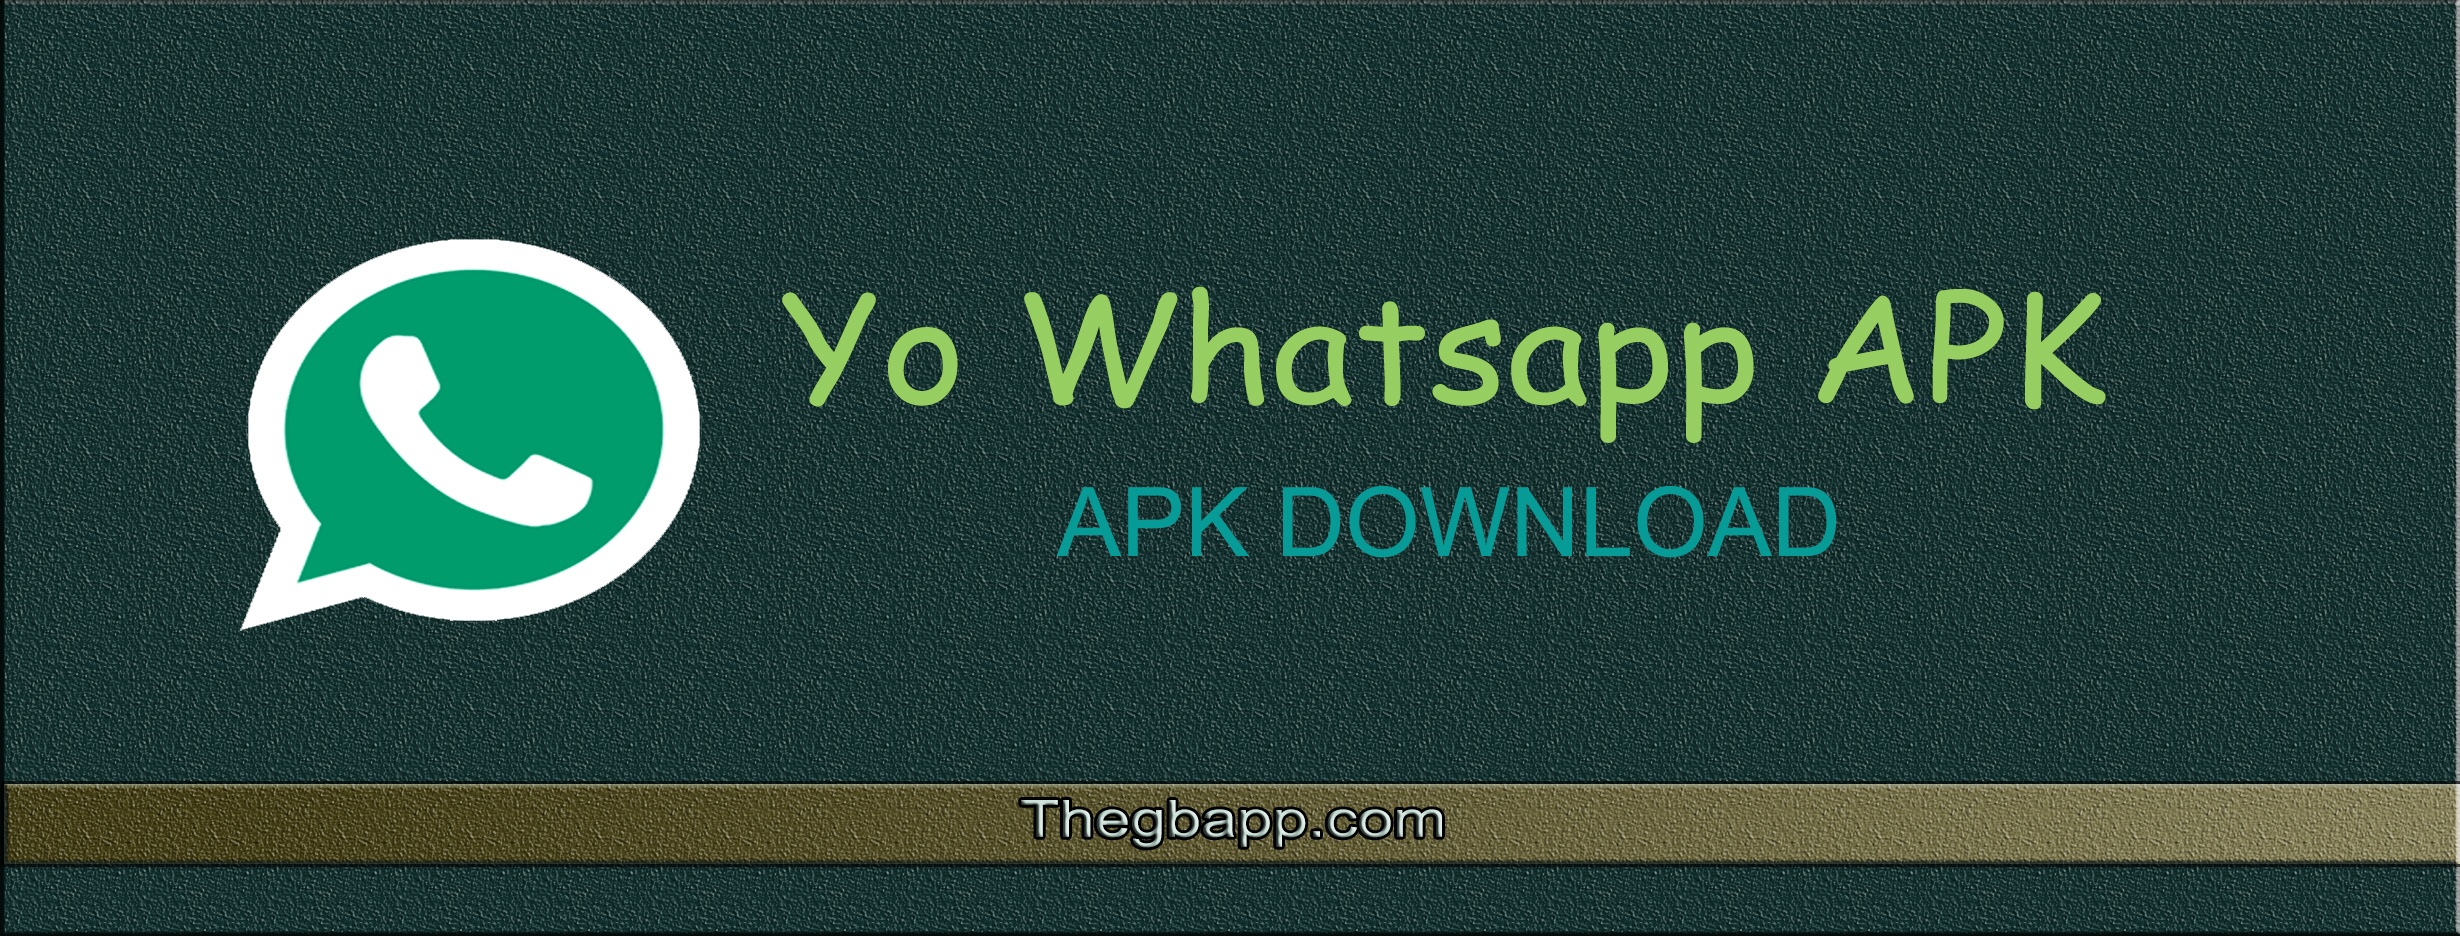 yo whatsapp apk download